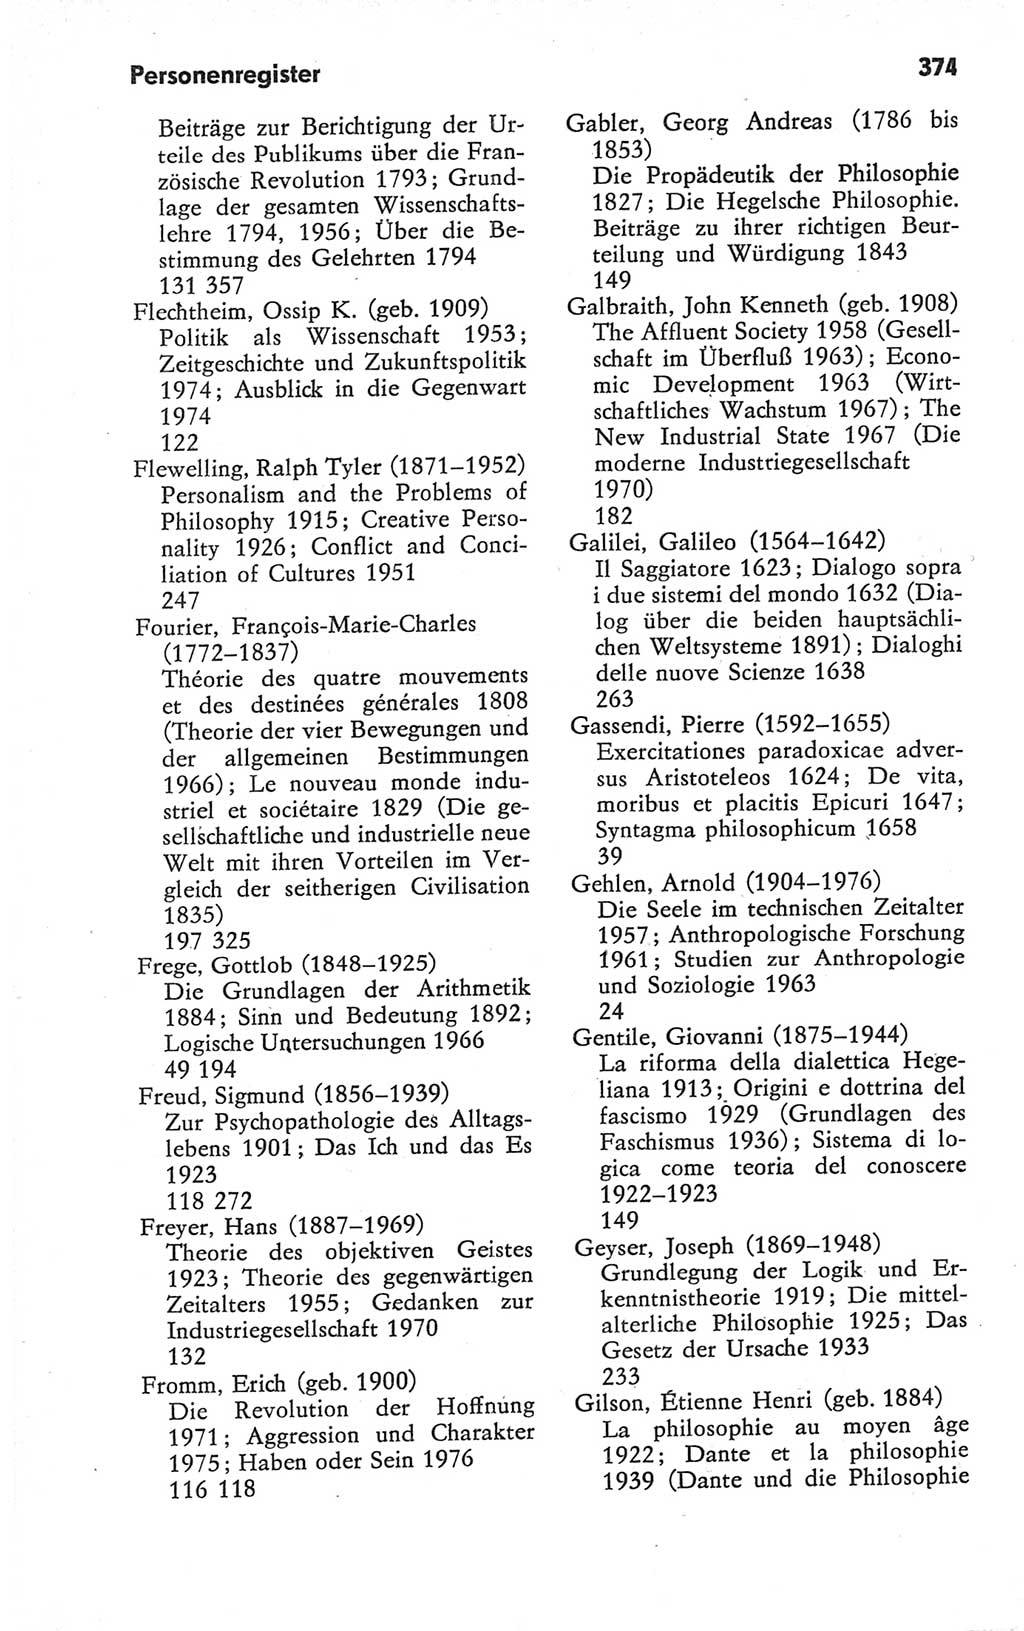 Kleines Wörterbuch der marxistisch-leninistischen Philosophie [Deutsche Demokratische Republik (DDR)] 1979, Seite 374 (Kl. Wb. ML Phil. DDR 1979, S. 374)